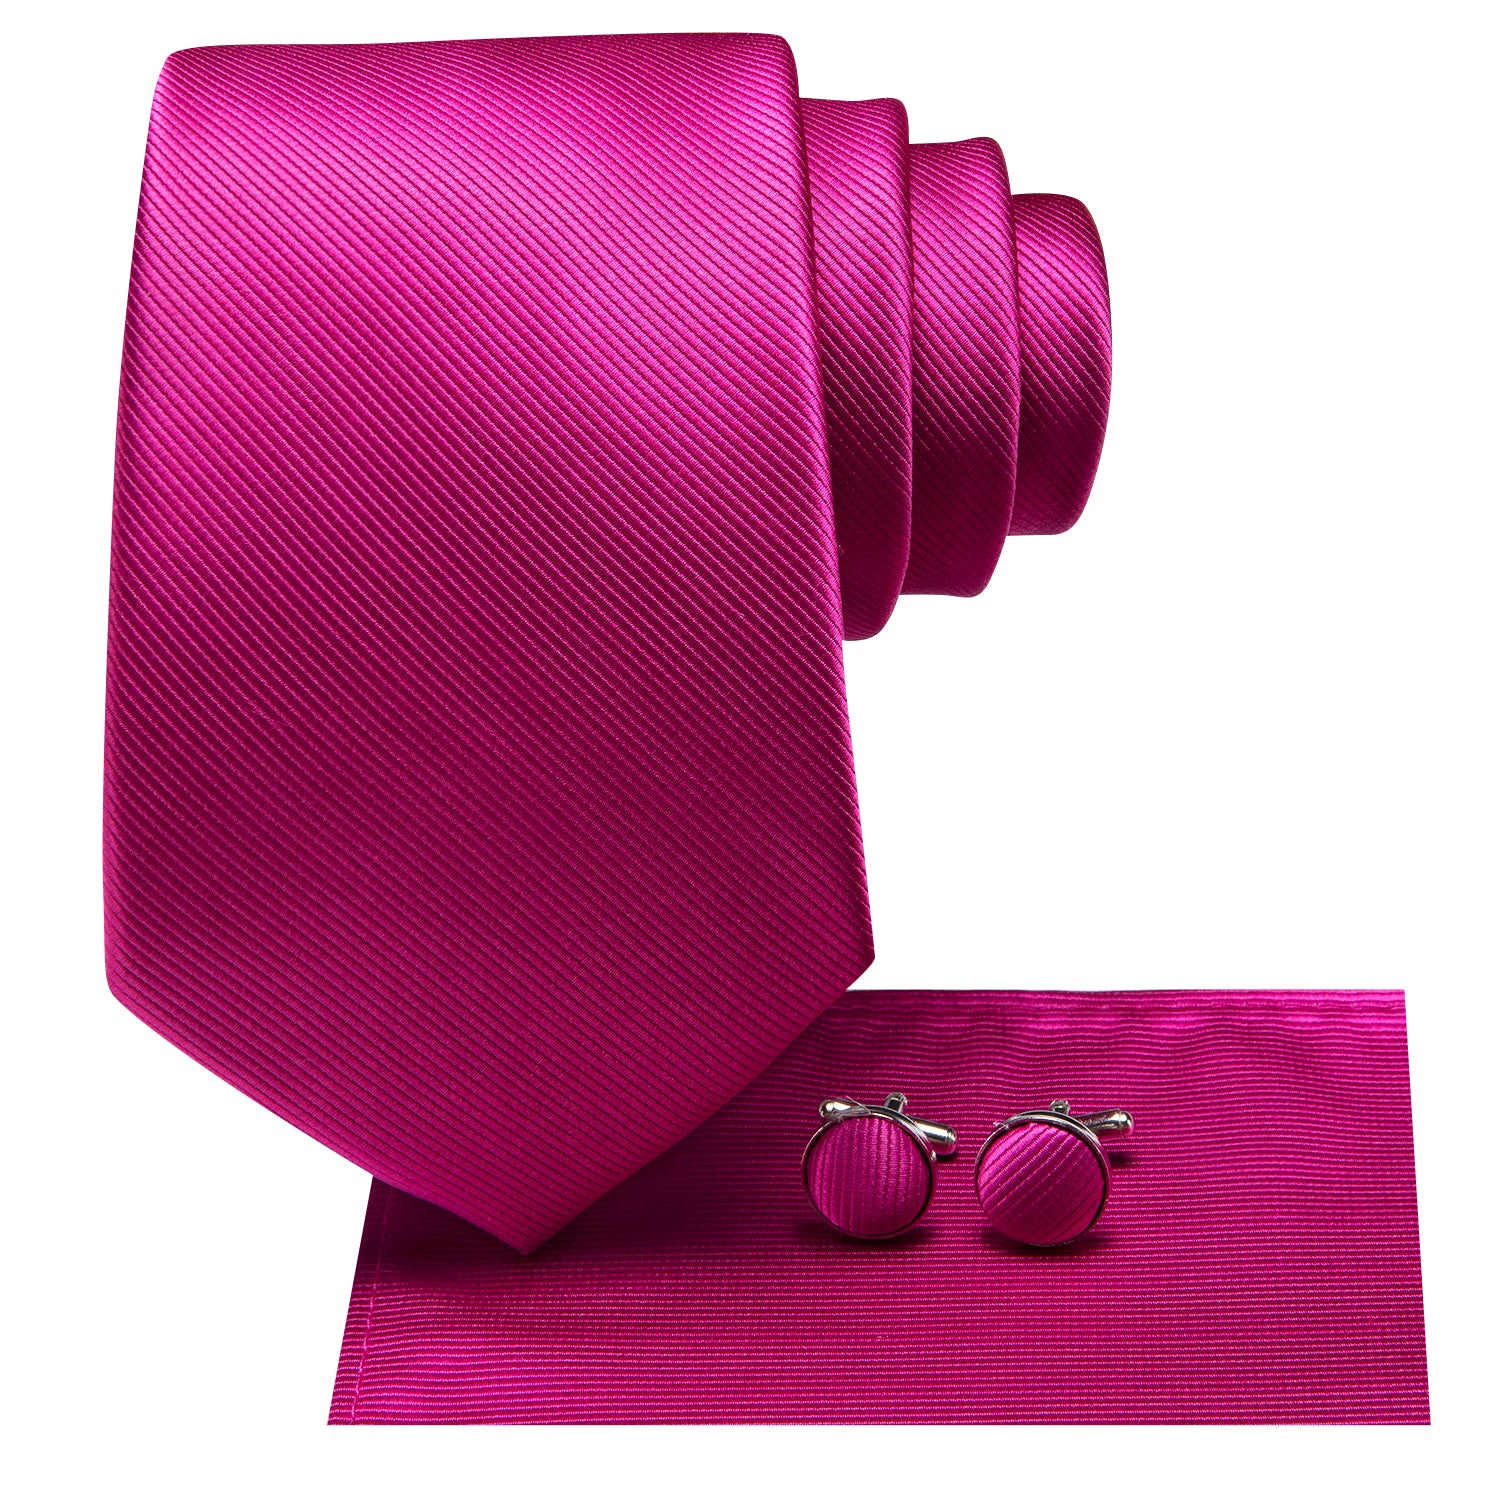 Hi-Tie Rose Pink Floral Men's Tie Pocket Square Cufflinks Set